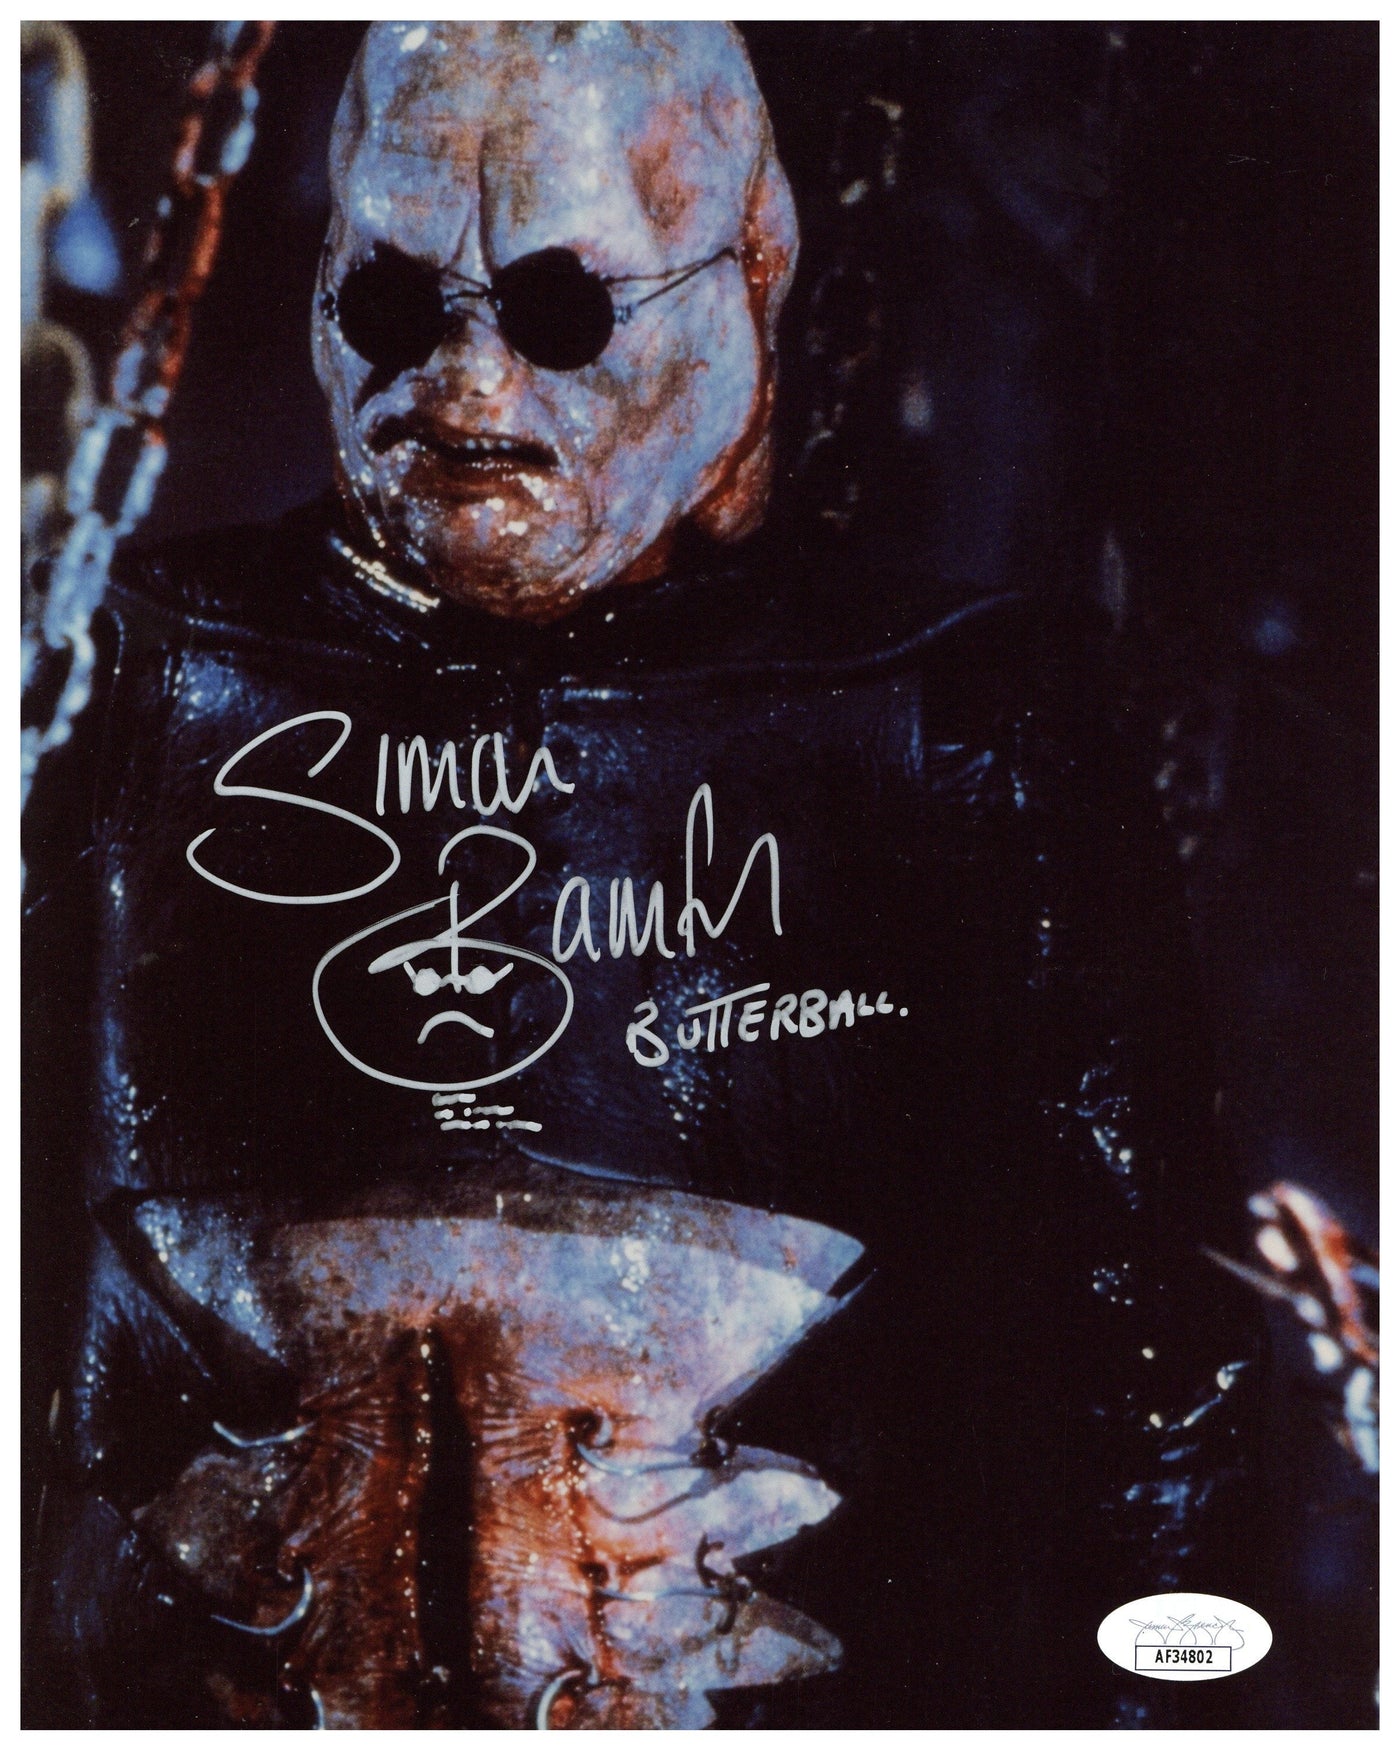 Simon Bamford Signed 8x10 Photo Hellraiser Butterball Autographed JSA COA